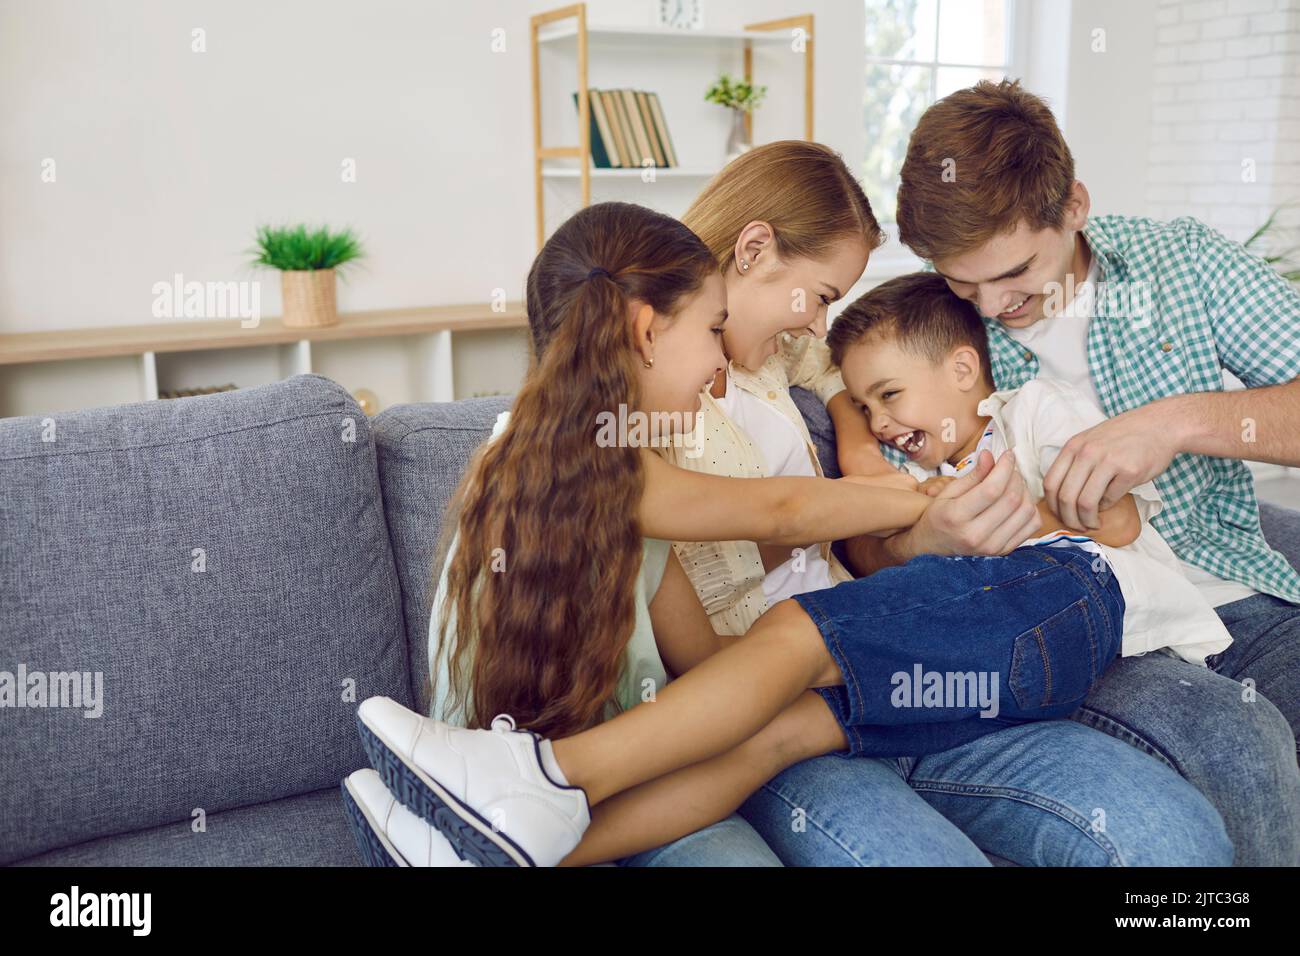 Famiglia allegra con bambini che si divertono insieme e che si divertono a fare il solletico sul divano del soggiorno Foto Stock